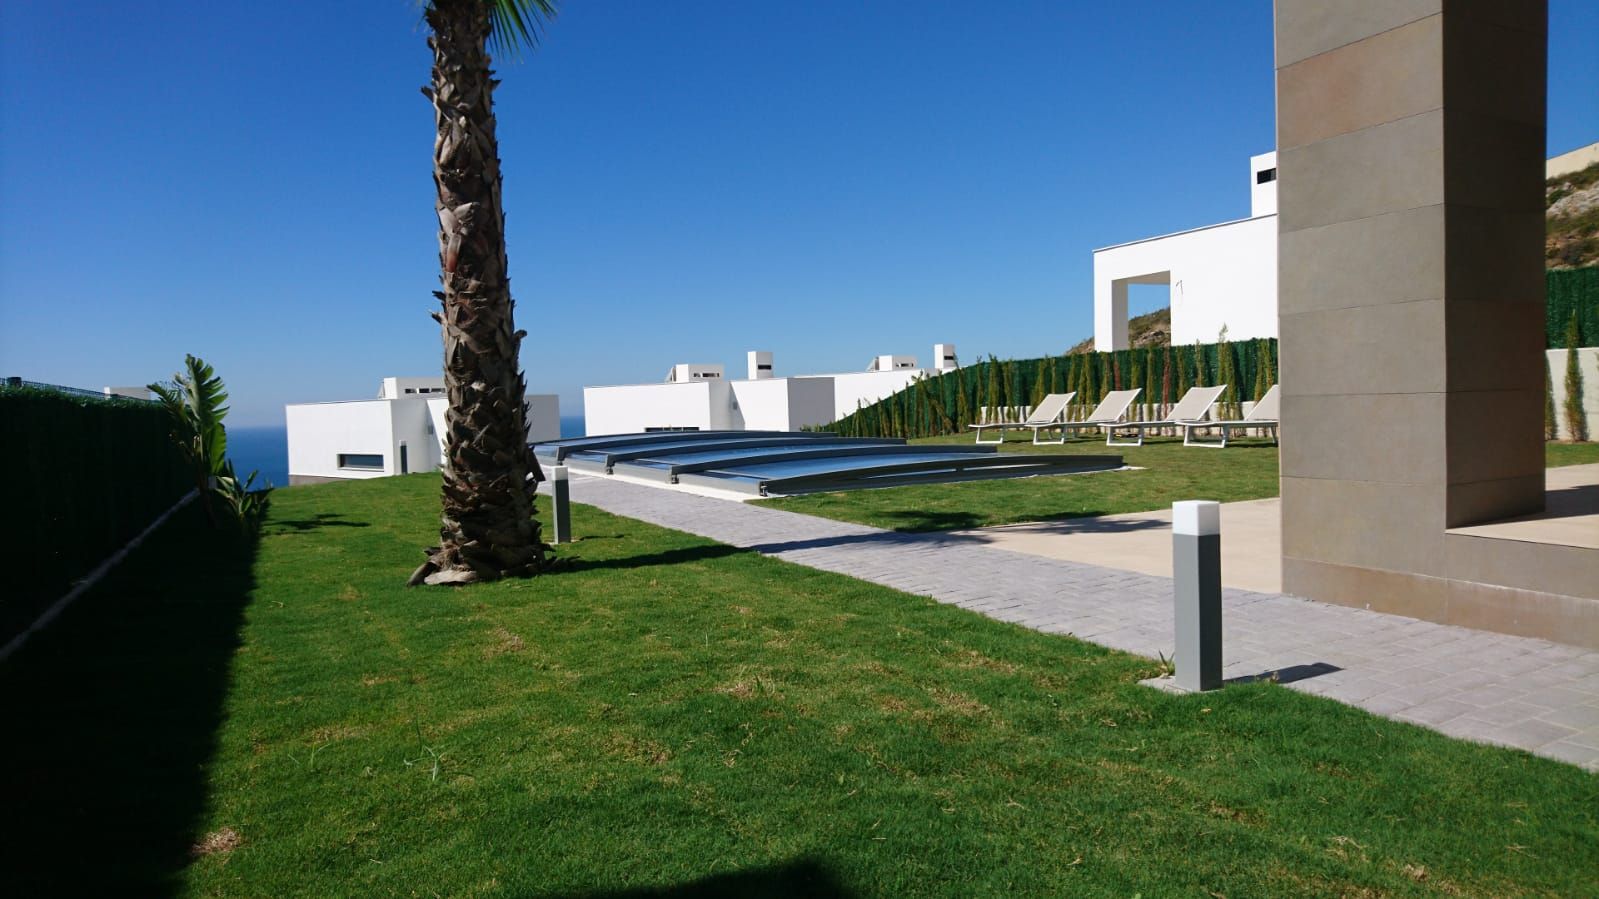 Cubierta Telescópica Néo Smart - Málaga, AZENCO AZENCO Garden Pool